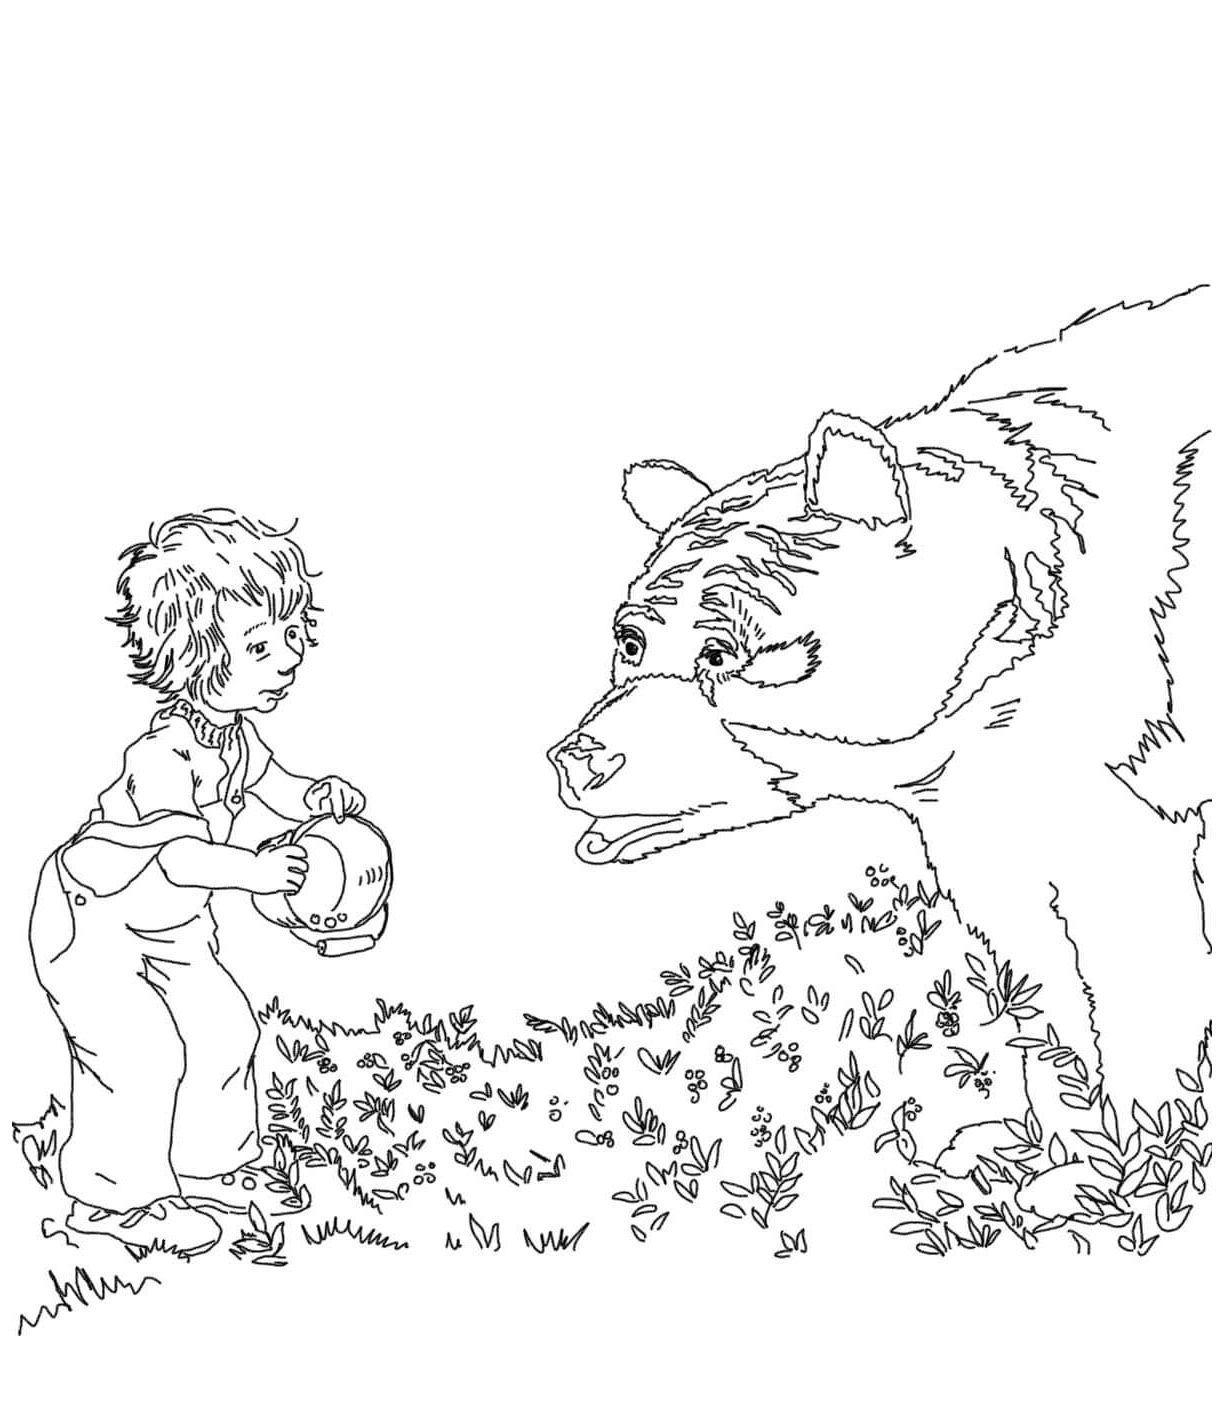 Паустовский раскраска. Паустовский дремучий медведь раскраска. Дремучий медведь раскраска. Иллюстрация медведя раскраска. Дремучий медведь Паустовский рисунок.